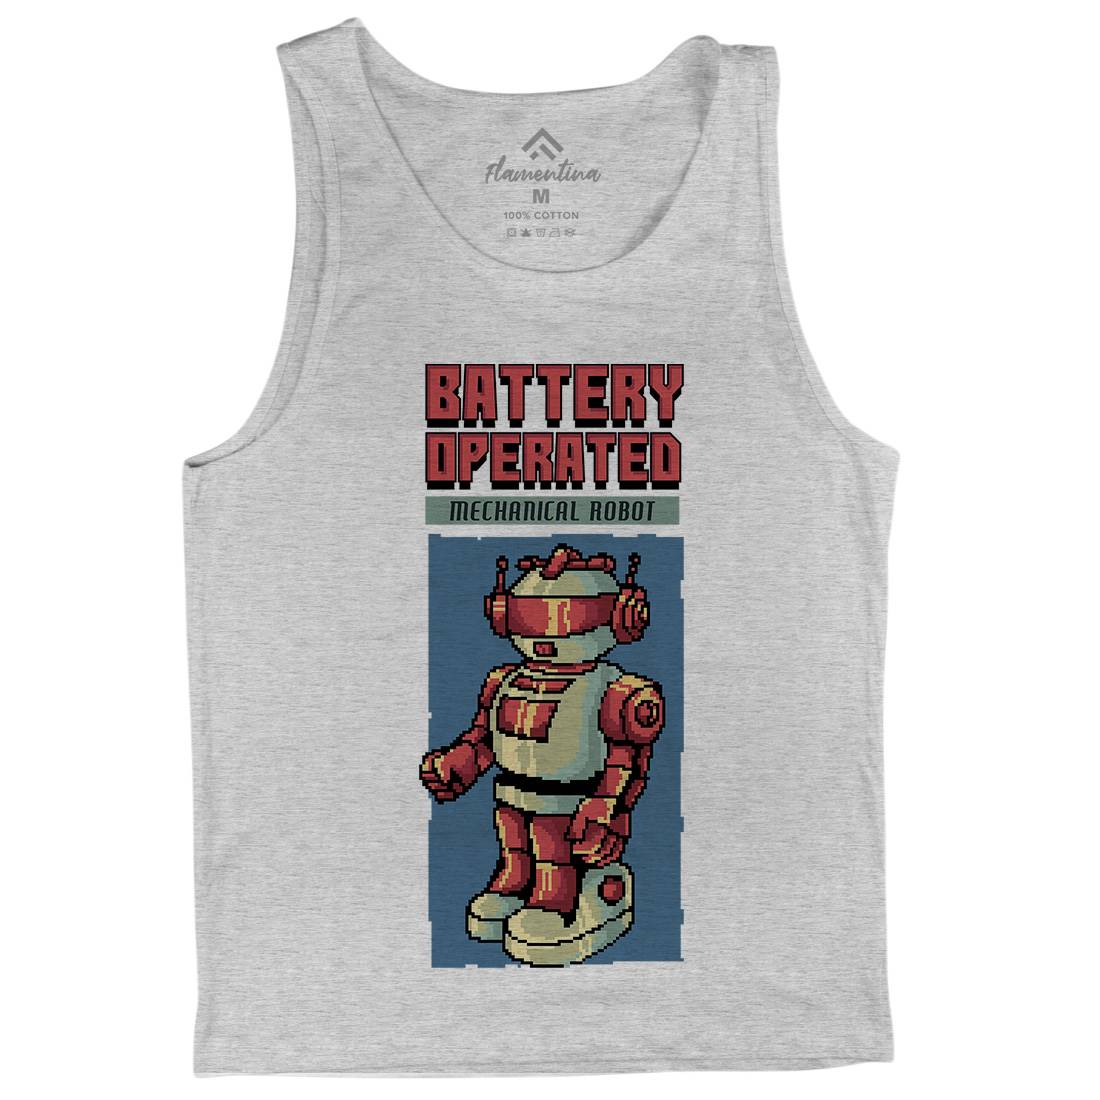 Vintages Robot Mens Tank Top Vest Retro B977